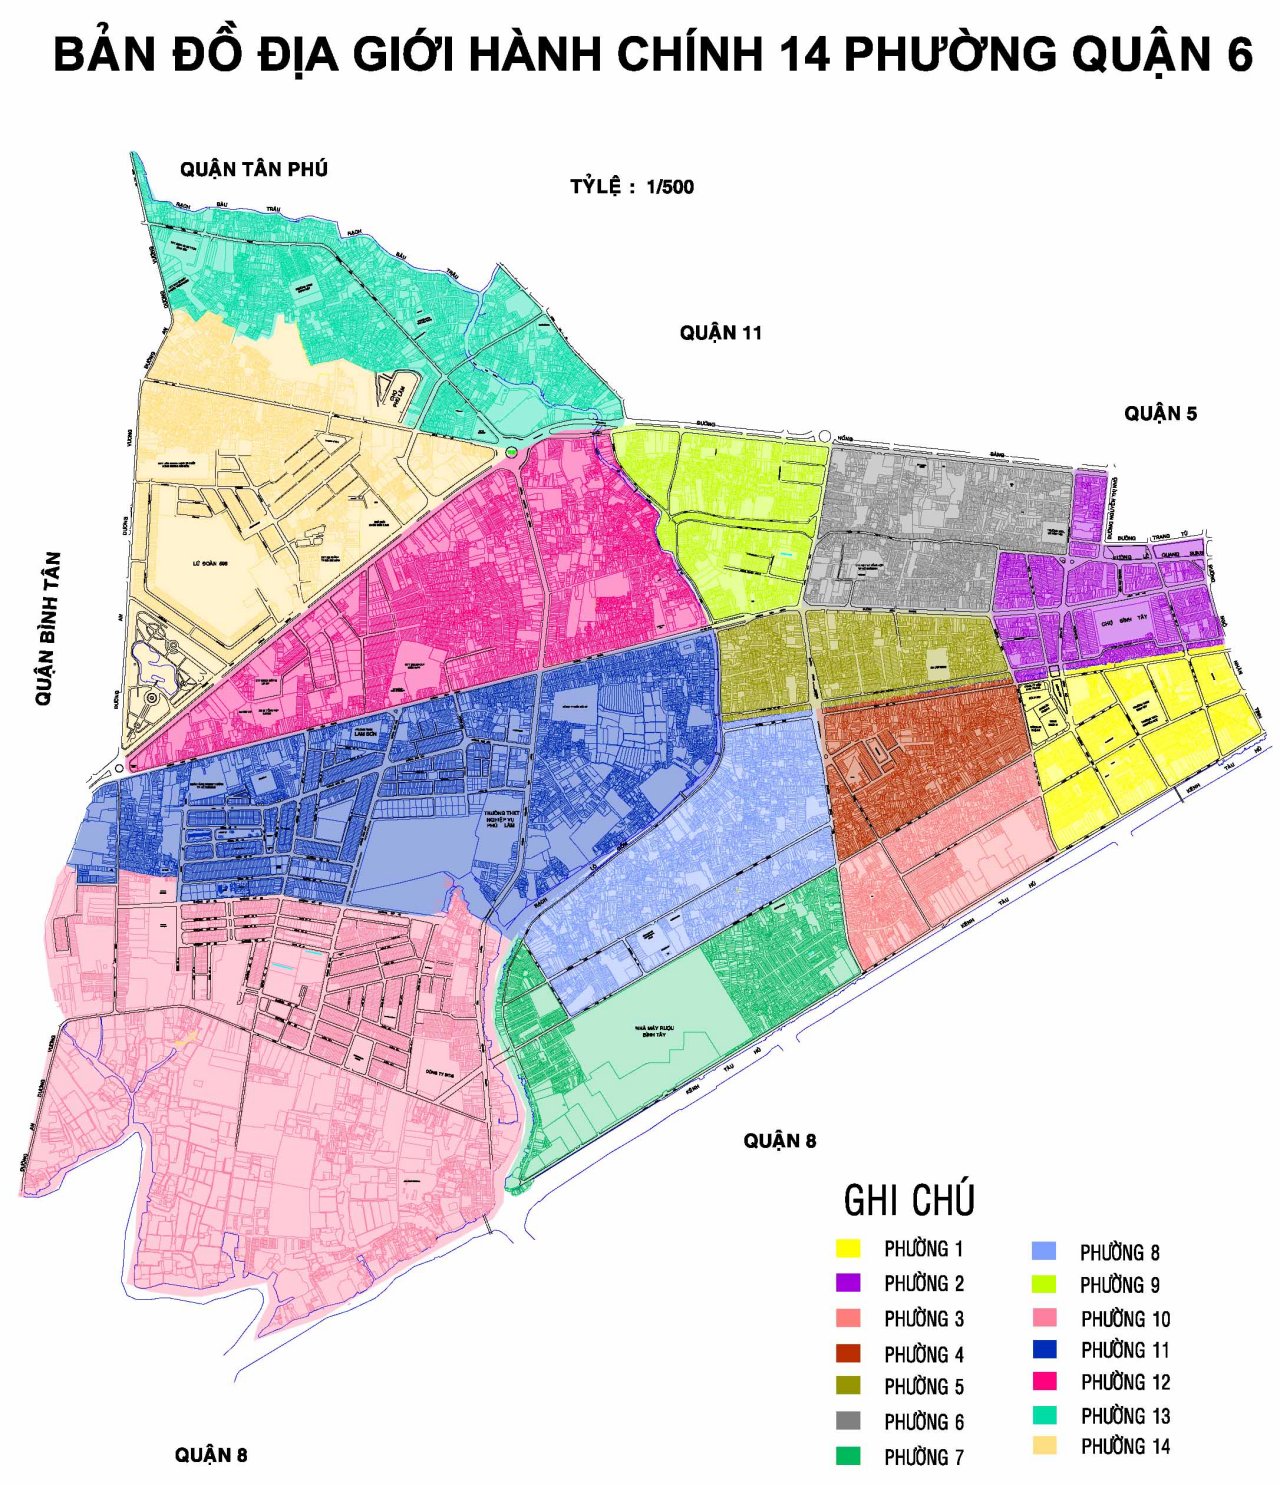 Bản đồ TP.HCM Khổ Lớn 2024 Quận 8:
Bạn đang tìm kiếm một bản đồ TP. HCM khổ lớn và đầy đủ nhất? Hãy nhấn vào hình ảnh để đến với bản đồ mới nhất và chi tiết nhất của TP. Đặc biệt nó còn bao gồm cả khu vực Quận 8, nơi đang phát triển mạnh mẽ về đầu tư cũng như du lịch.